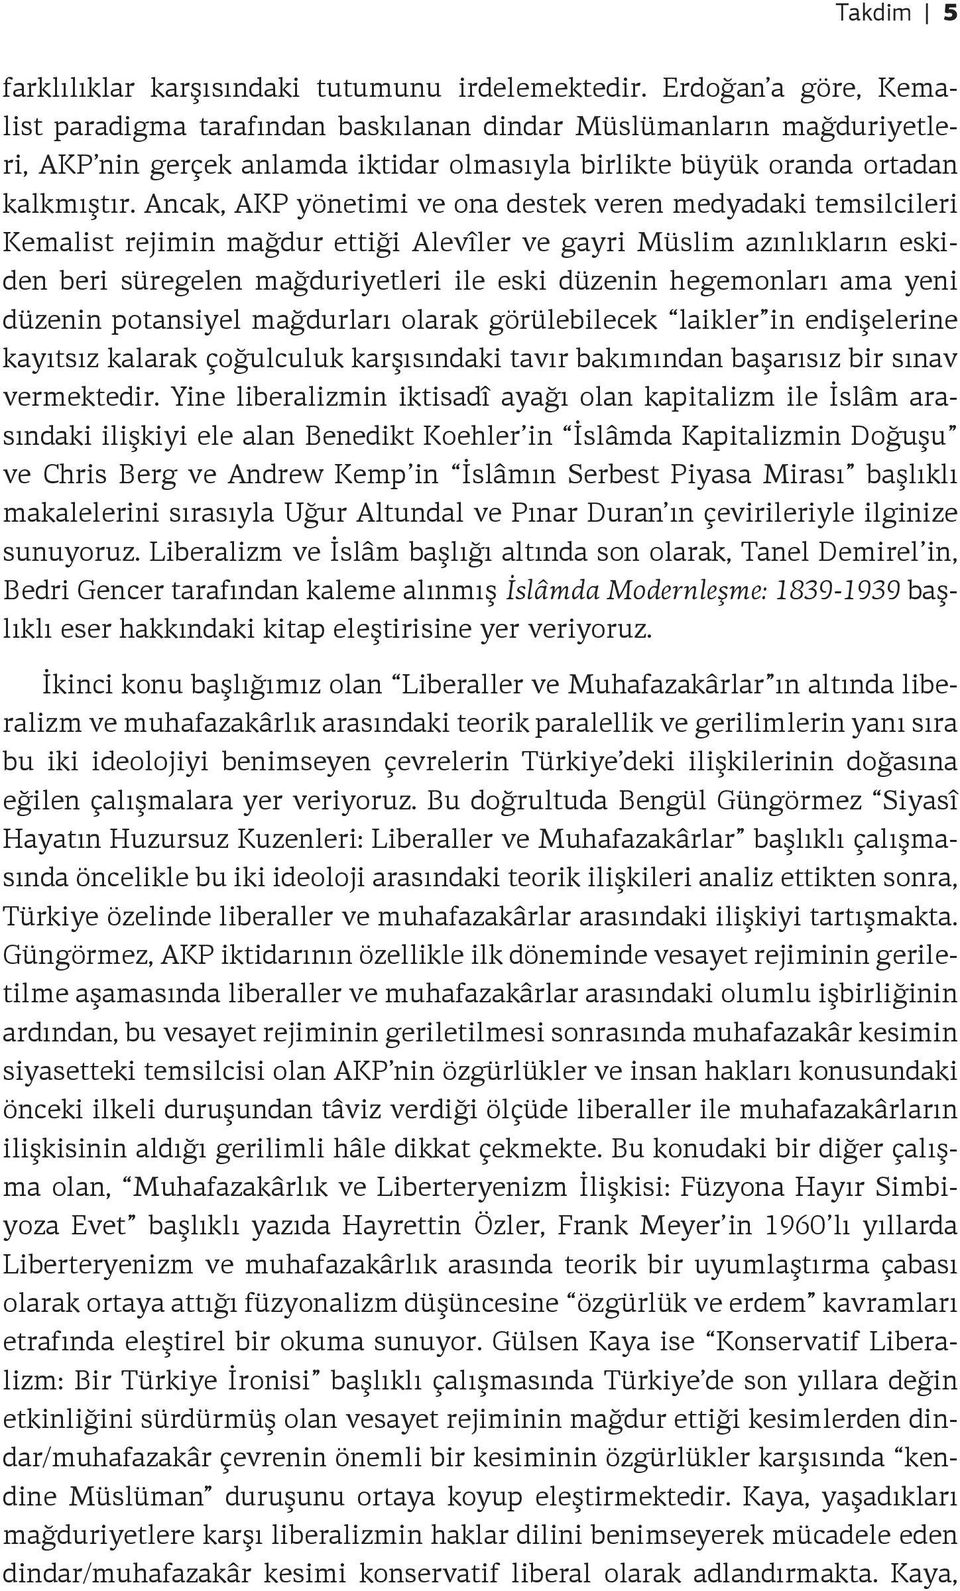 Ancak, AKP yönetimi ve ona destek veren medyadaki temsilcileri Kemalist rejimin mağdur ettiği Alevîler ve gayri Müslim azınlıkların eskiden beri süregelen mağduriyetleri ile eski düzenin hegemonları